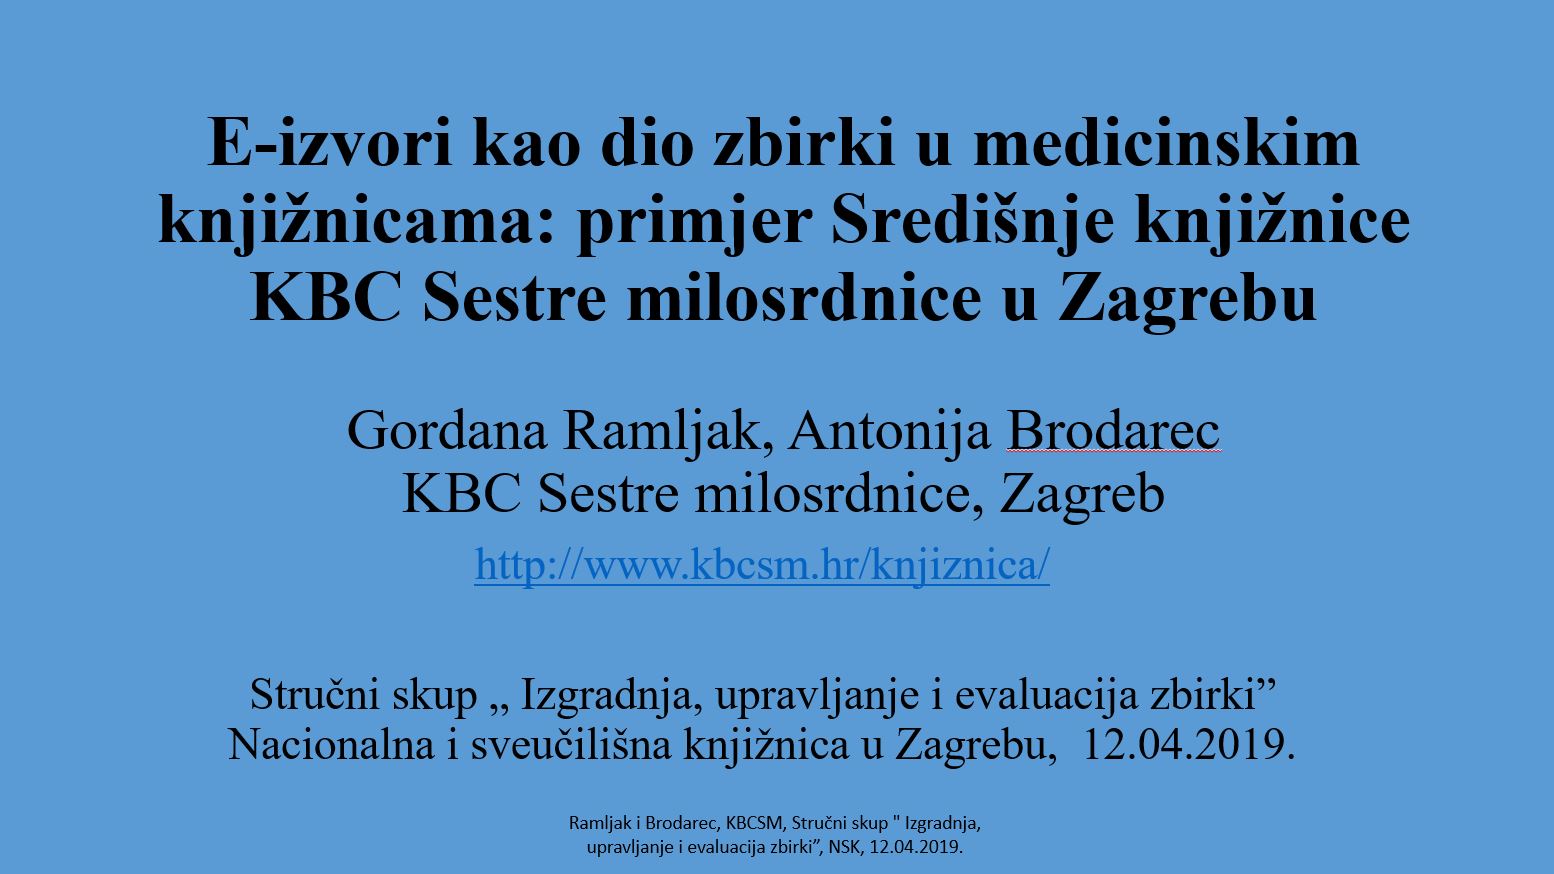 E-izvori kao dio zbirki u medicinskim knjižnicama: primjer Središnje knjižnice KBC Sestre milosrdnice u Zagrebu